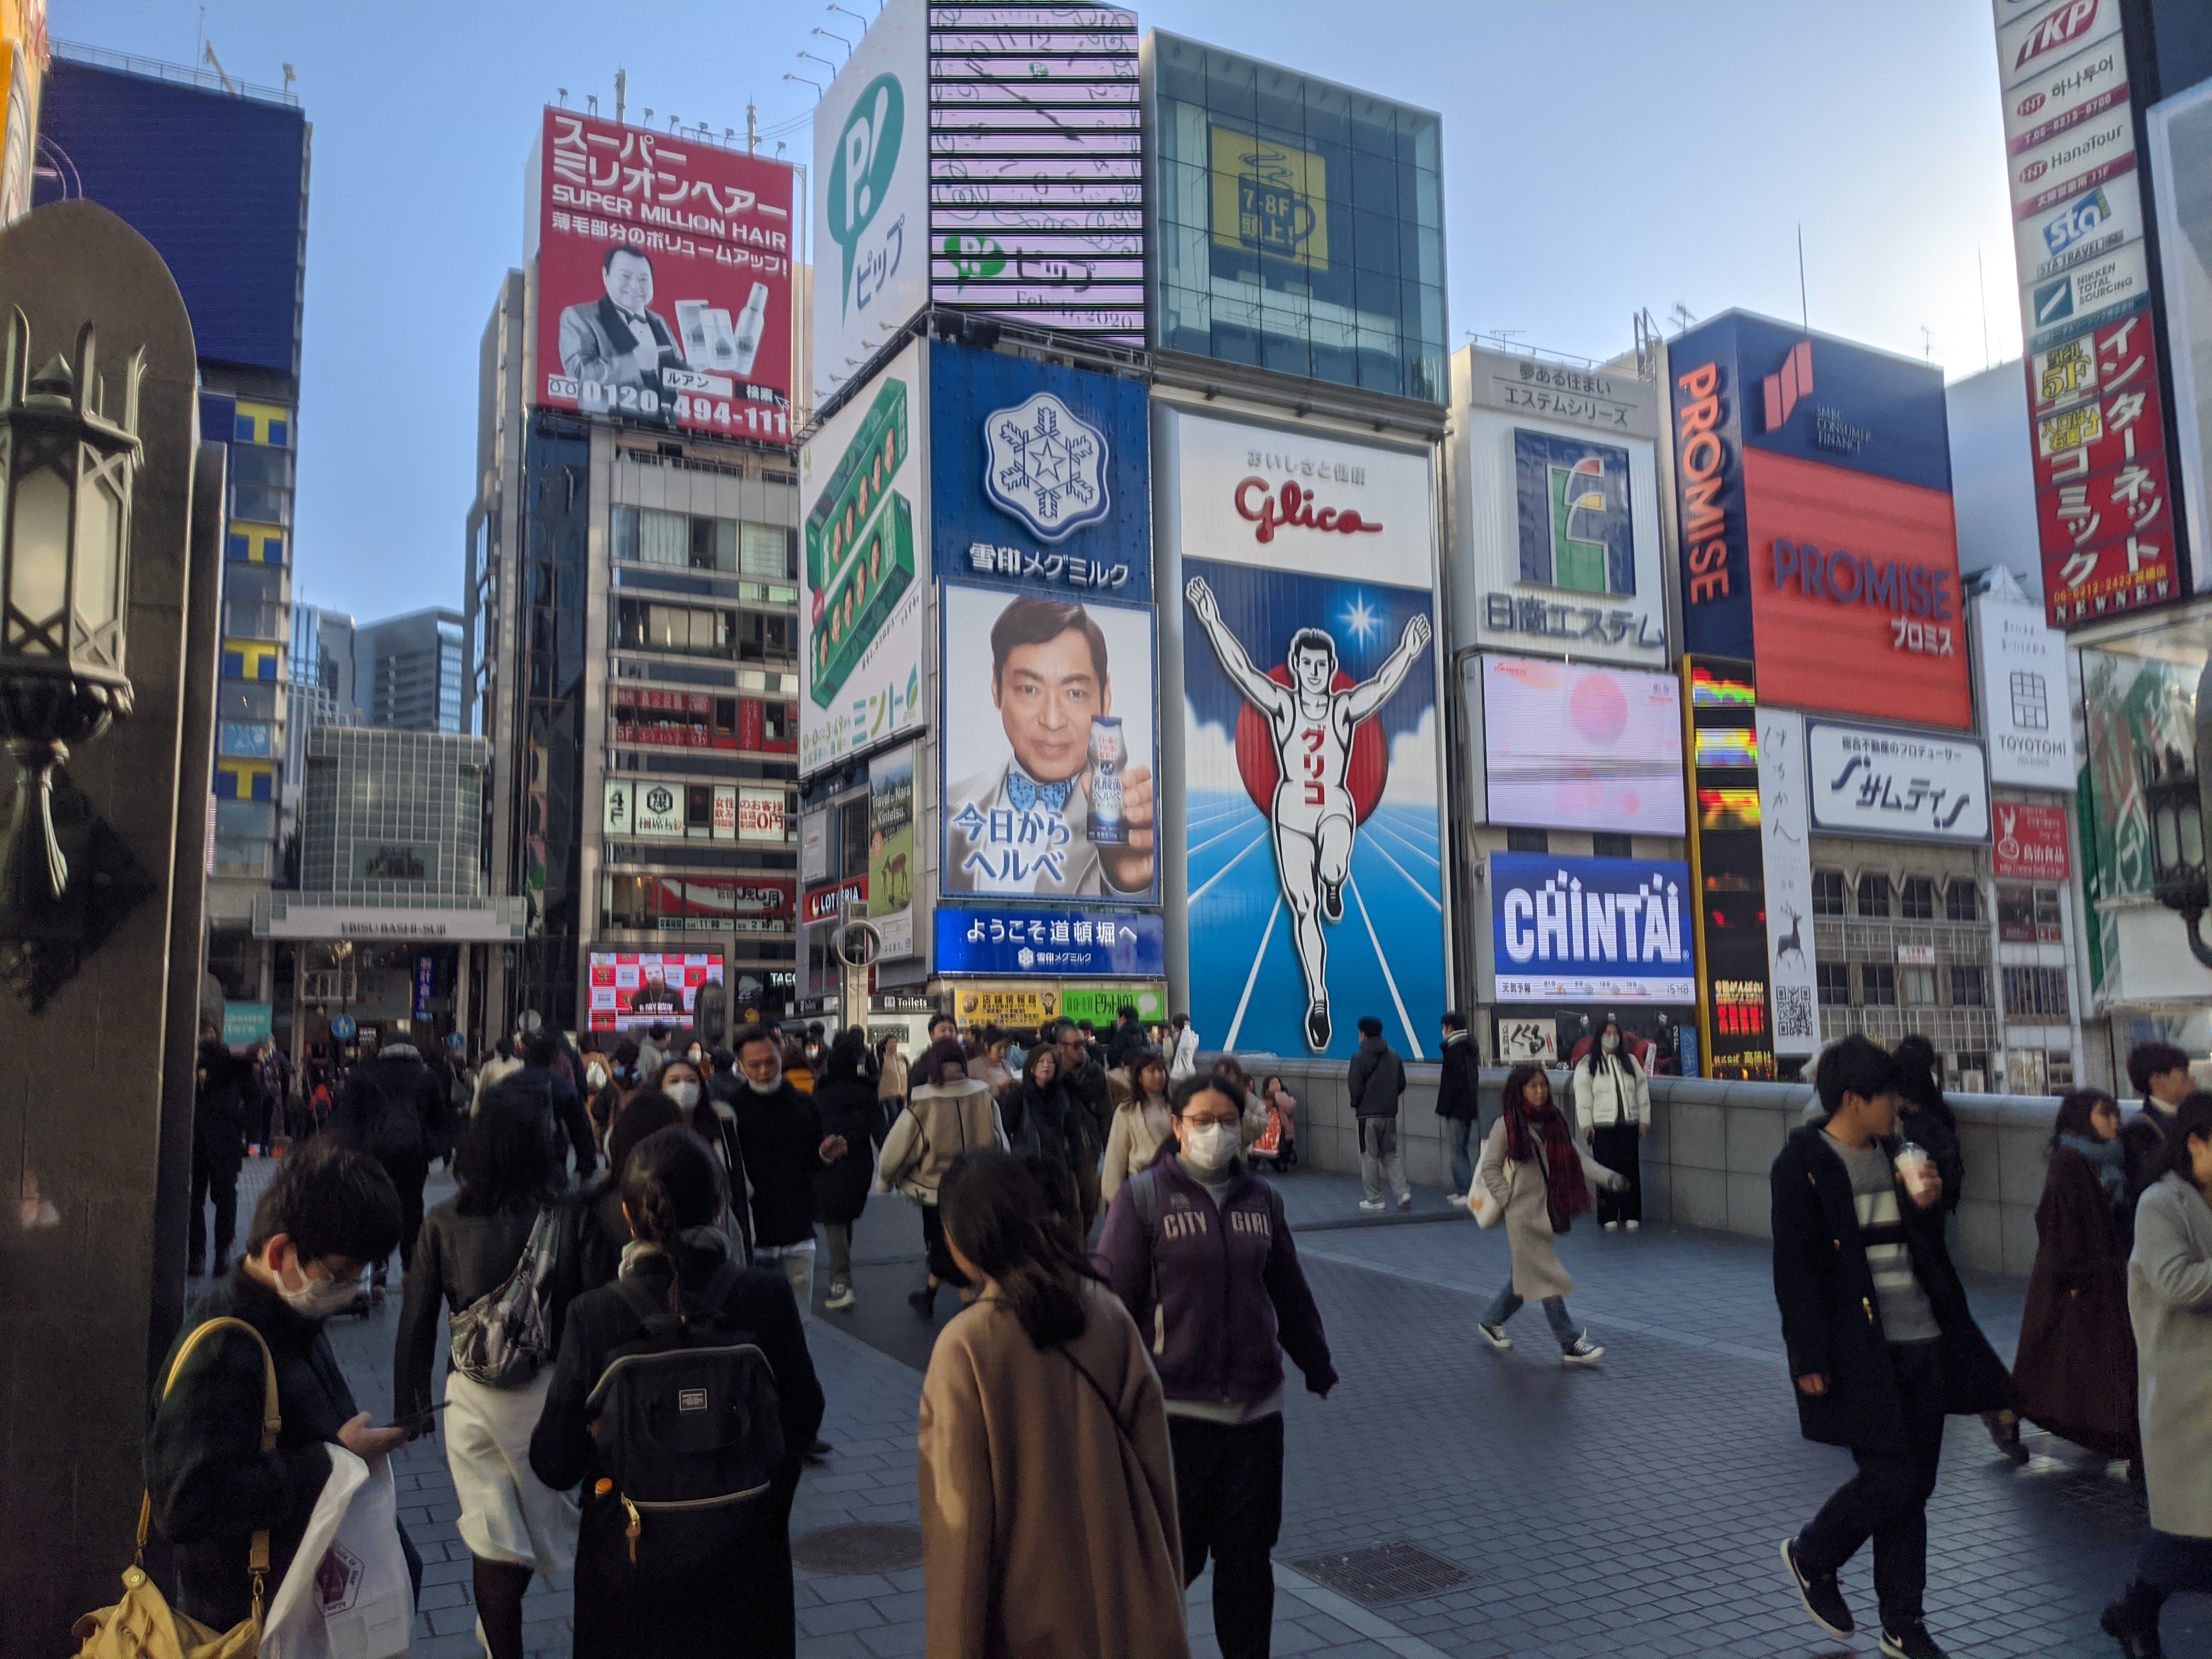 中国人観光客激減の大阪 閑古鳥の店 と 元気な店 の差はどこか ミナミを歩いた Fdn フードリンクニュース